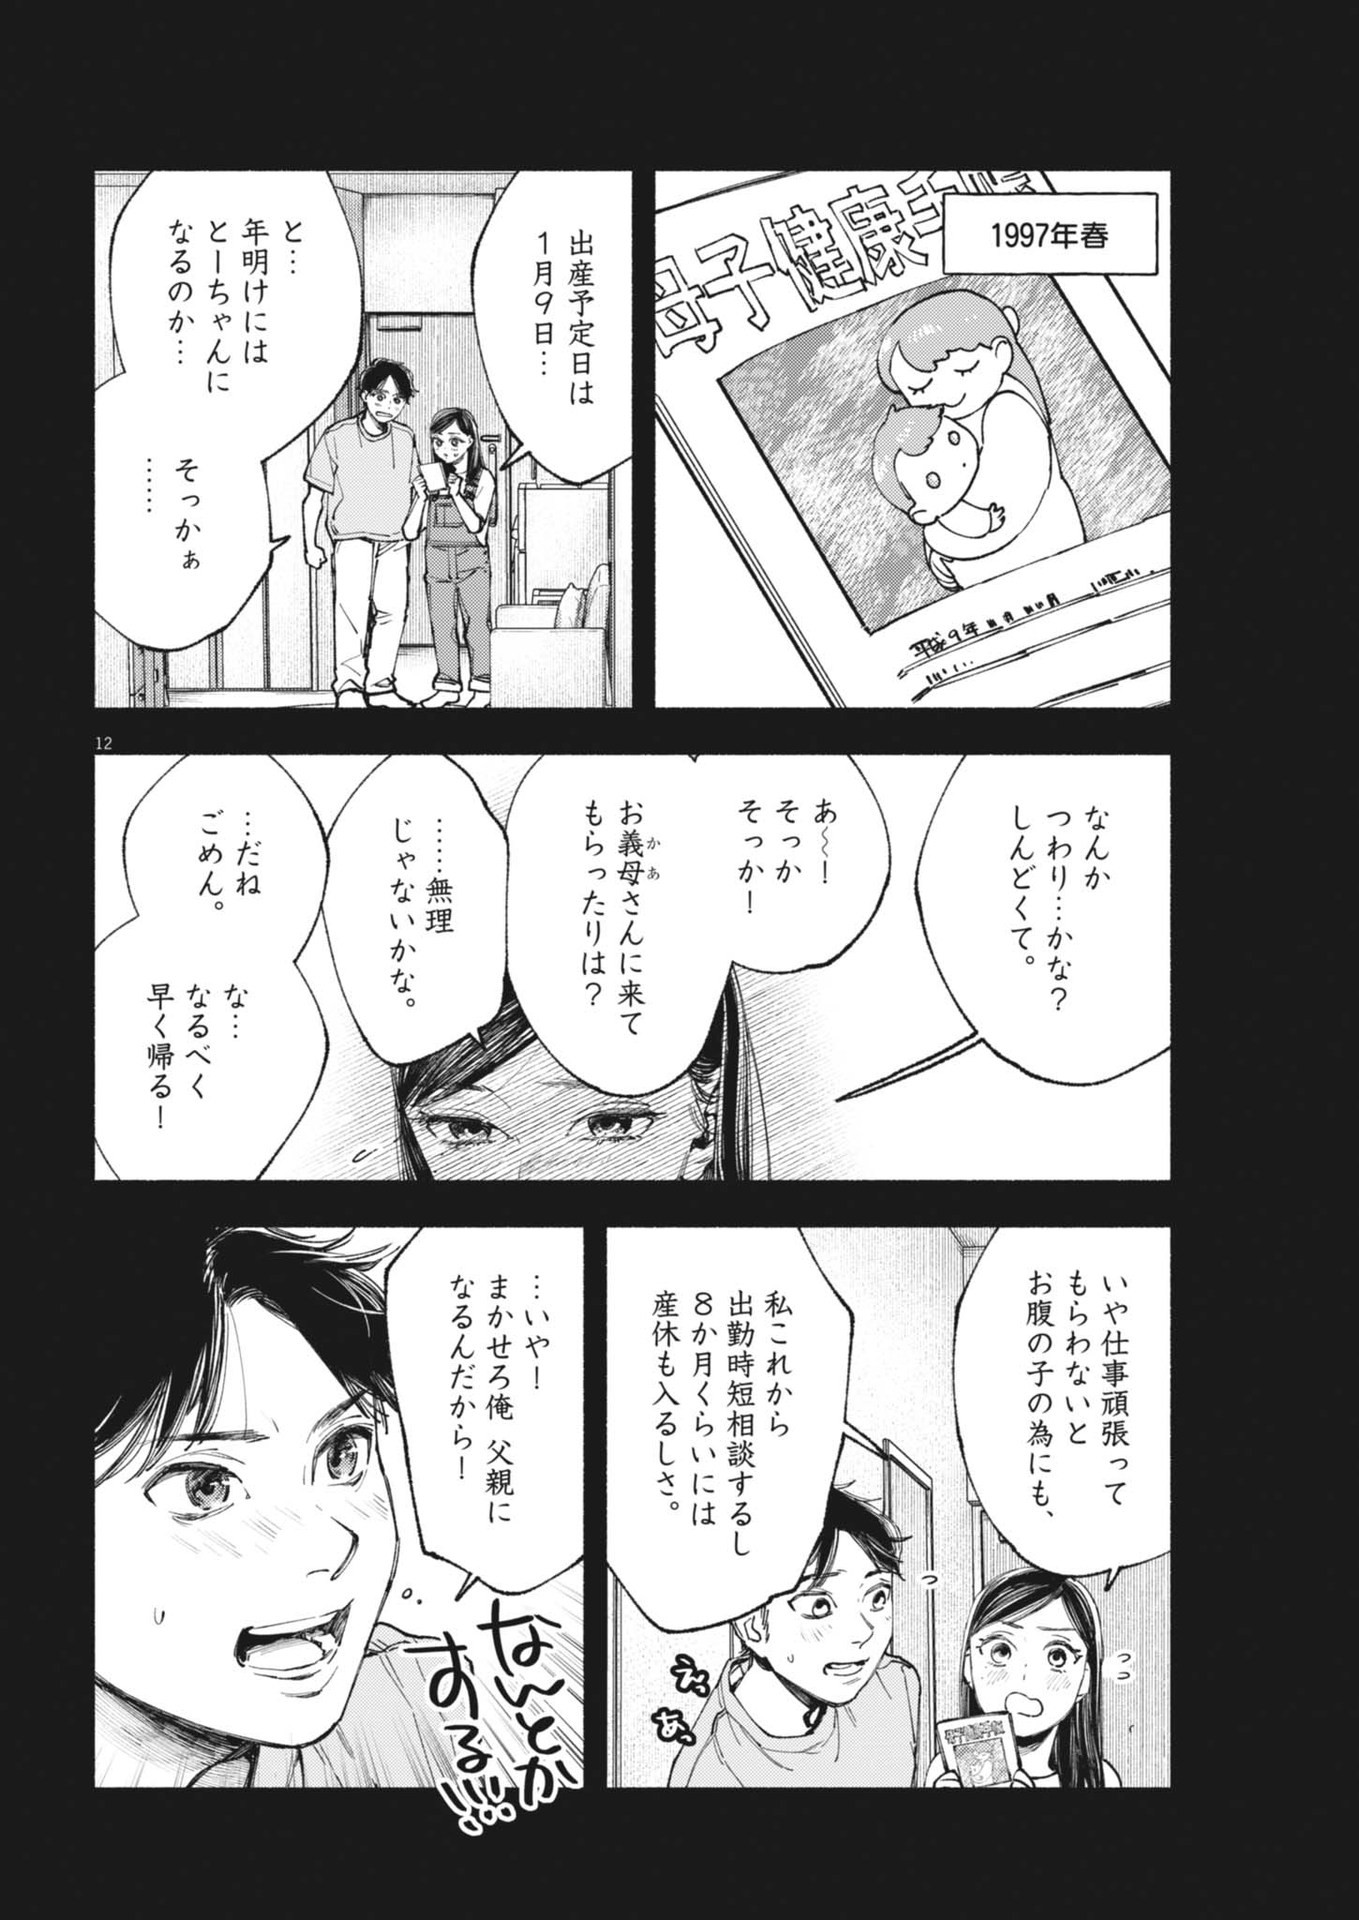 Konoyo wa Tatakau Kachi ga Aru  - Chapter 26 - Page 12